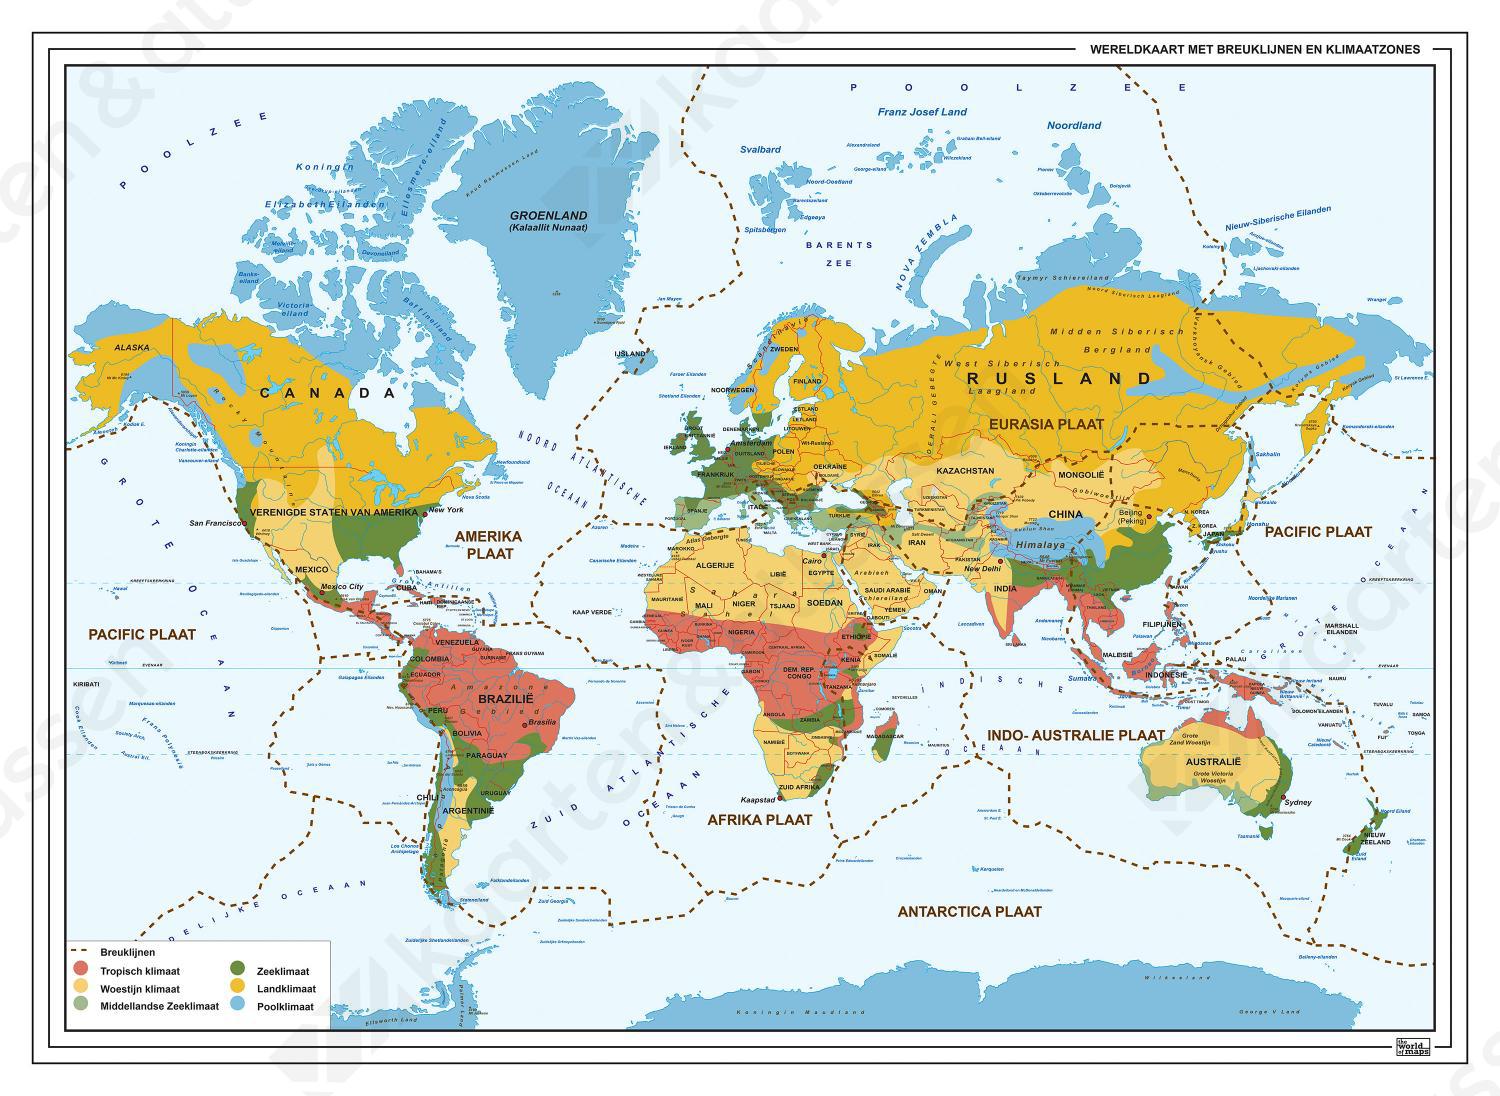 wereldkaart klimaatzones-breuklijnen 1322